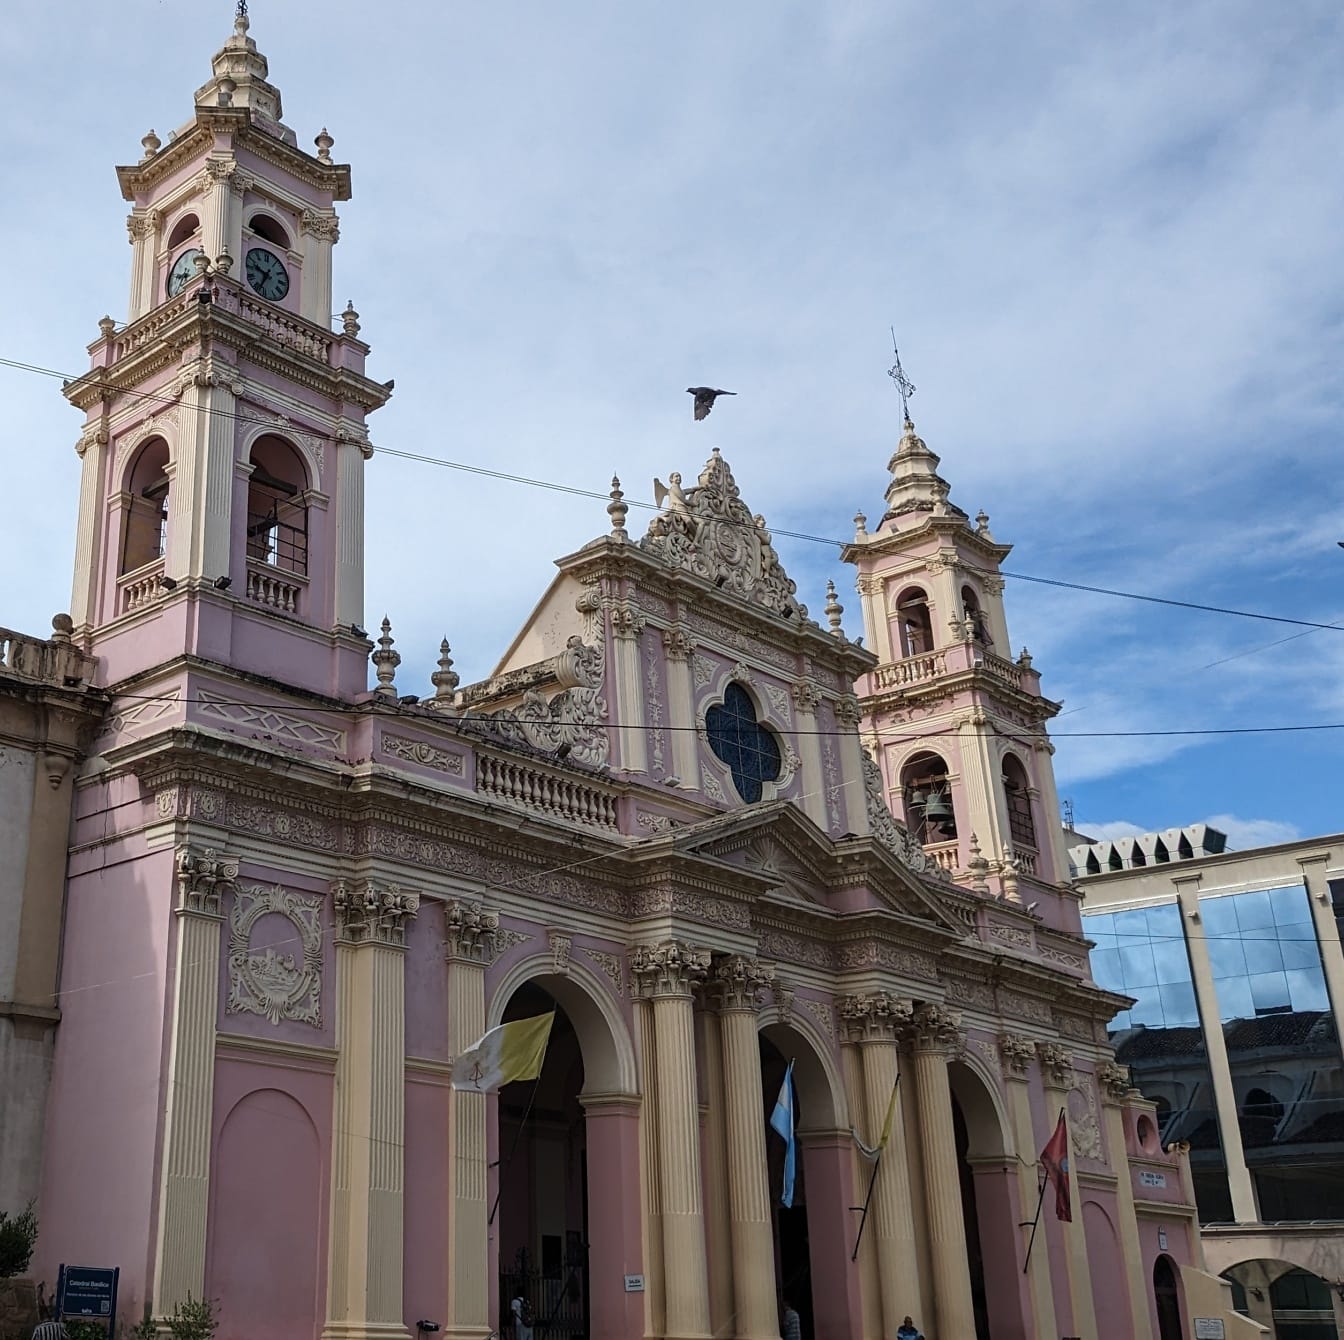 Catedral Basílica de Salta en Argentina en estilo arquitectónico colonial con color rosado en las paredes